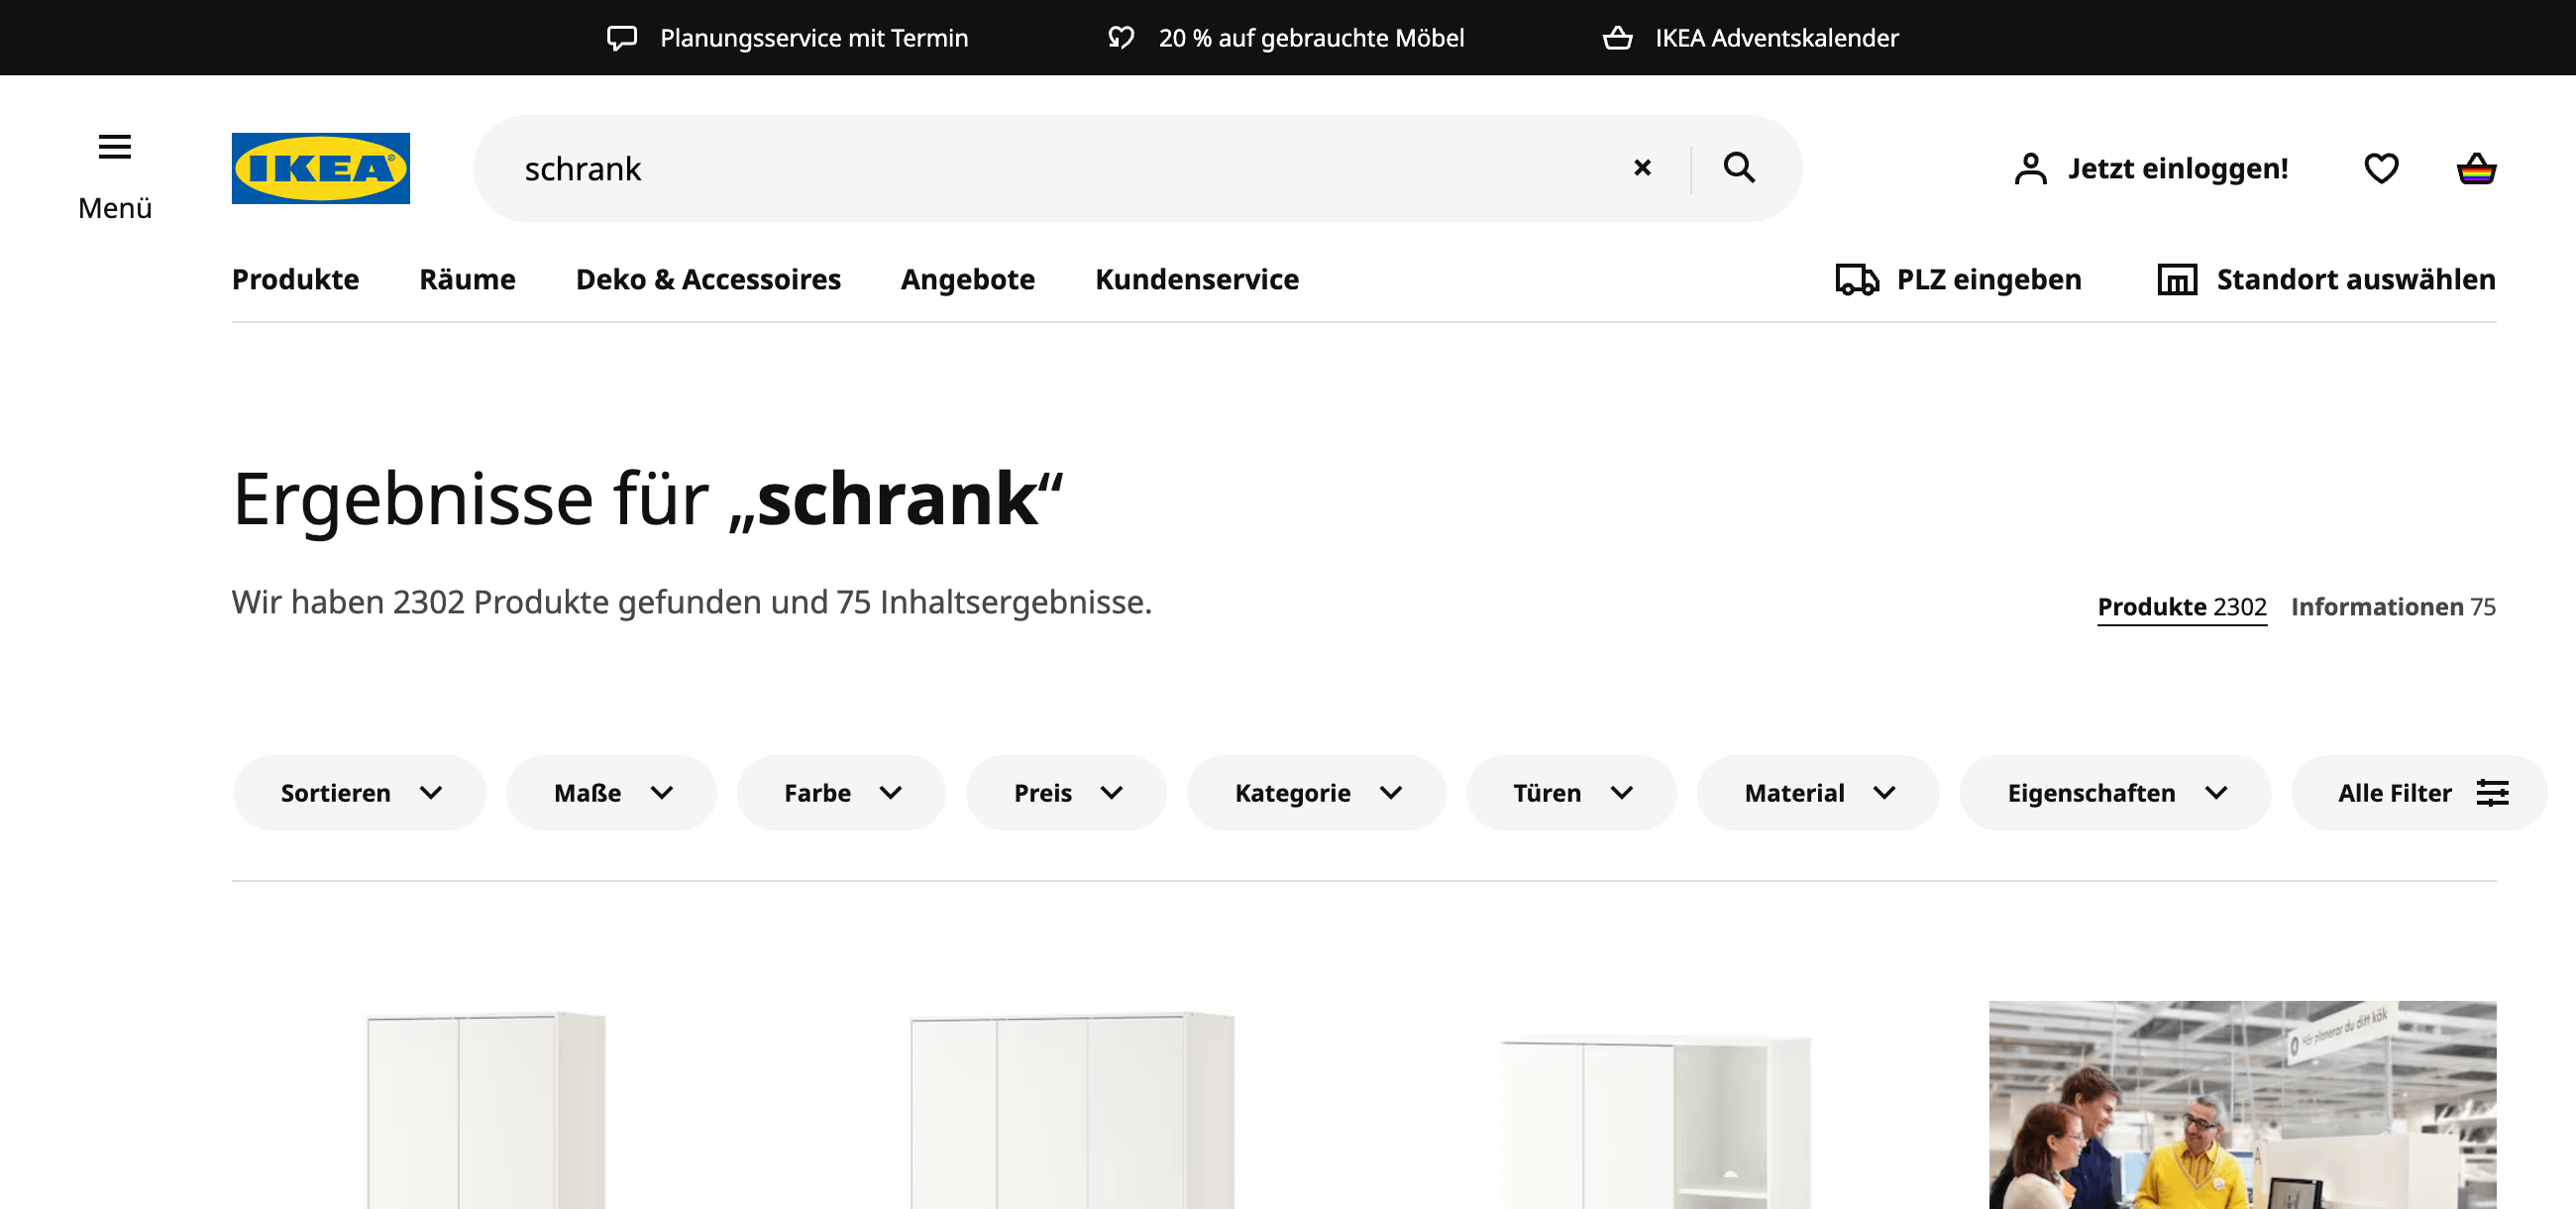 Interne Suchergebnisse auf ikea.com für Deutschland und die Suche nach Schrank. Es werden 2.302 Produktergebnisse gefunden.